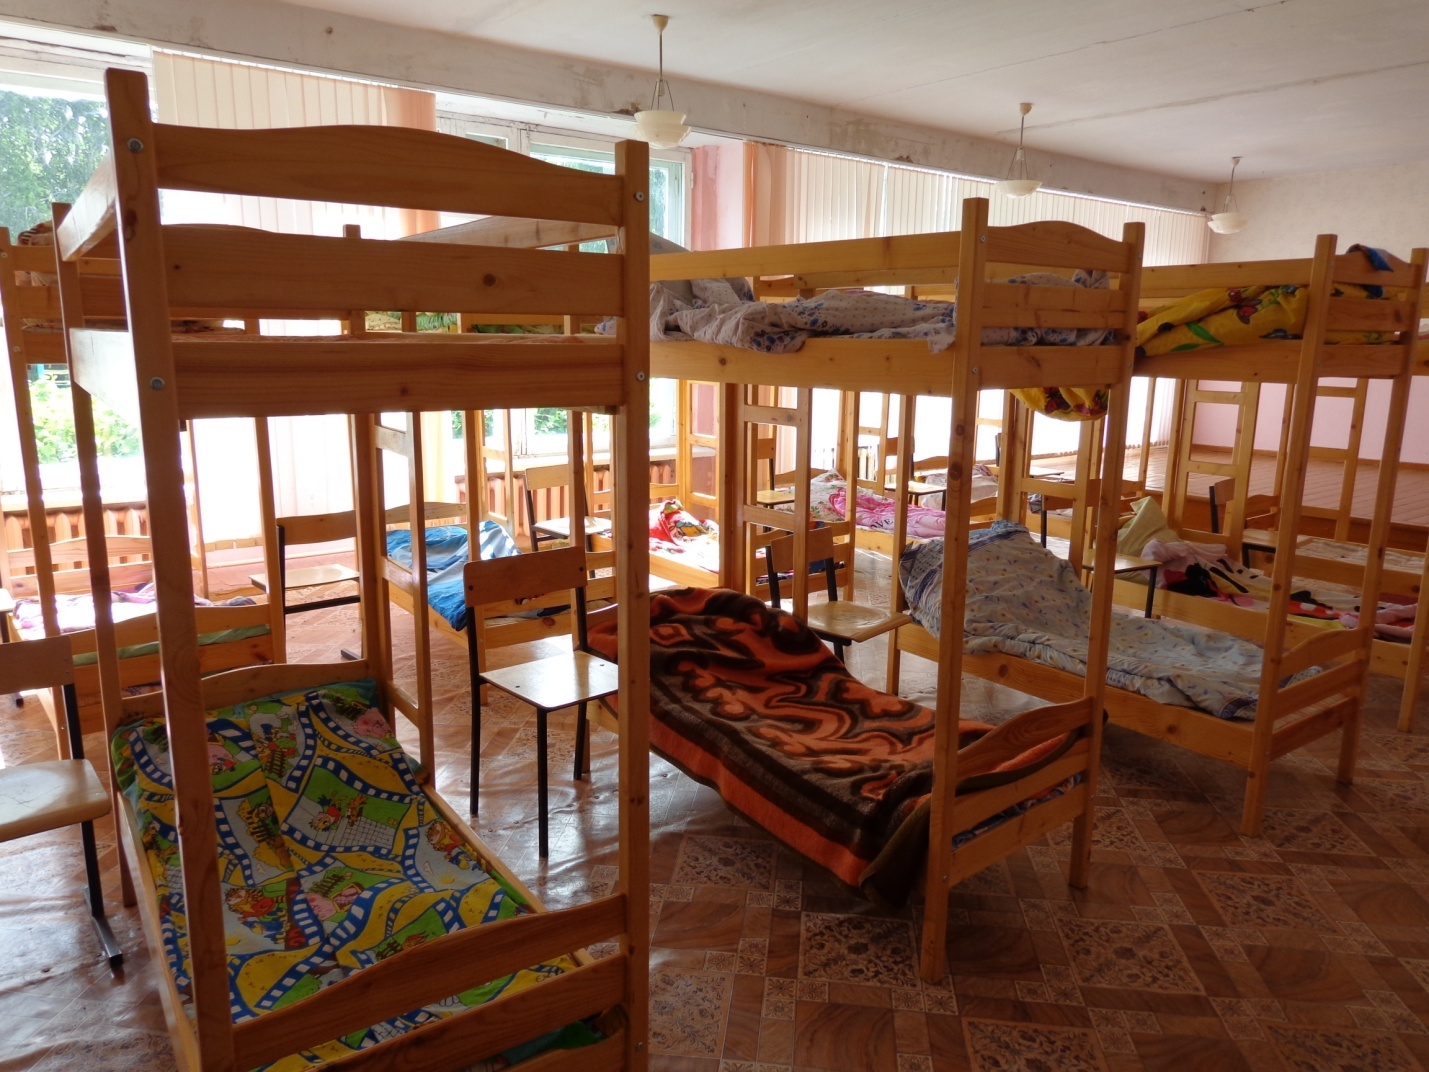 Room camp. Комната в лагере. Комната в детском лагере. Спальня в детском лагере. Лагерь для детей комнаты.